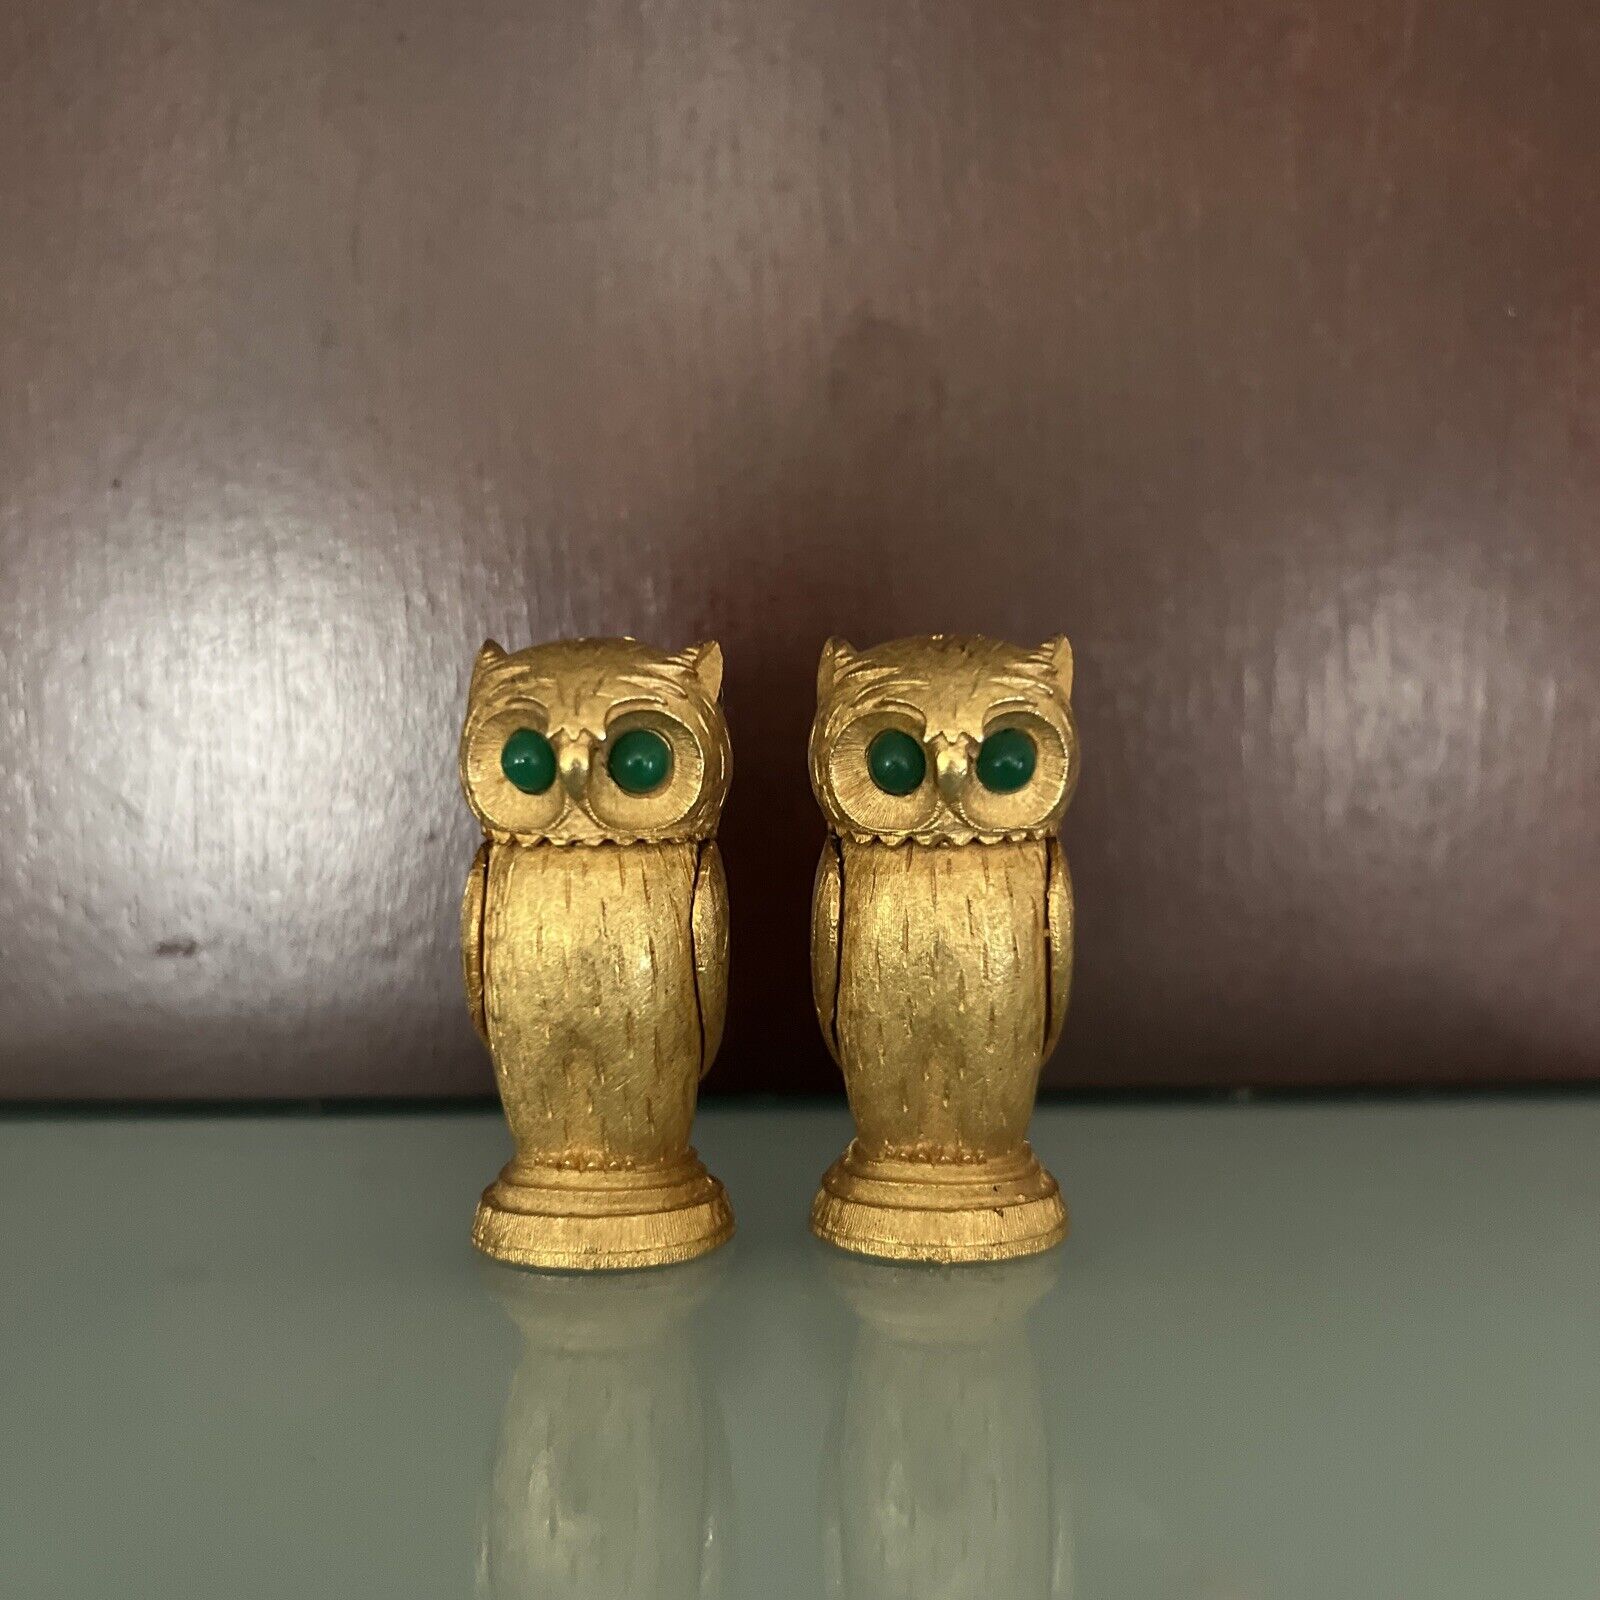 Rare Vintage Florenza Gold Toned Owl Salt & Pepper Shakers